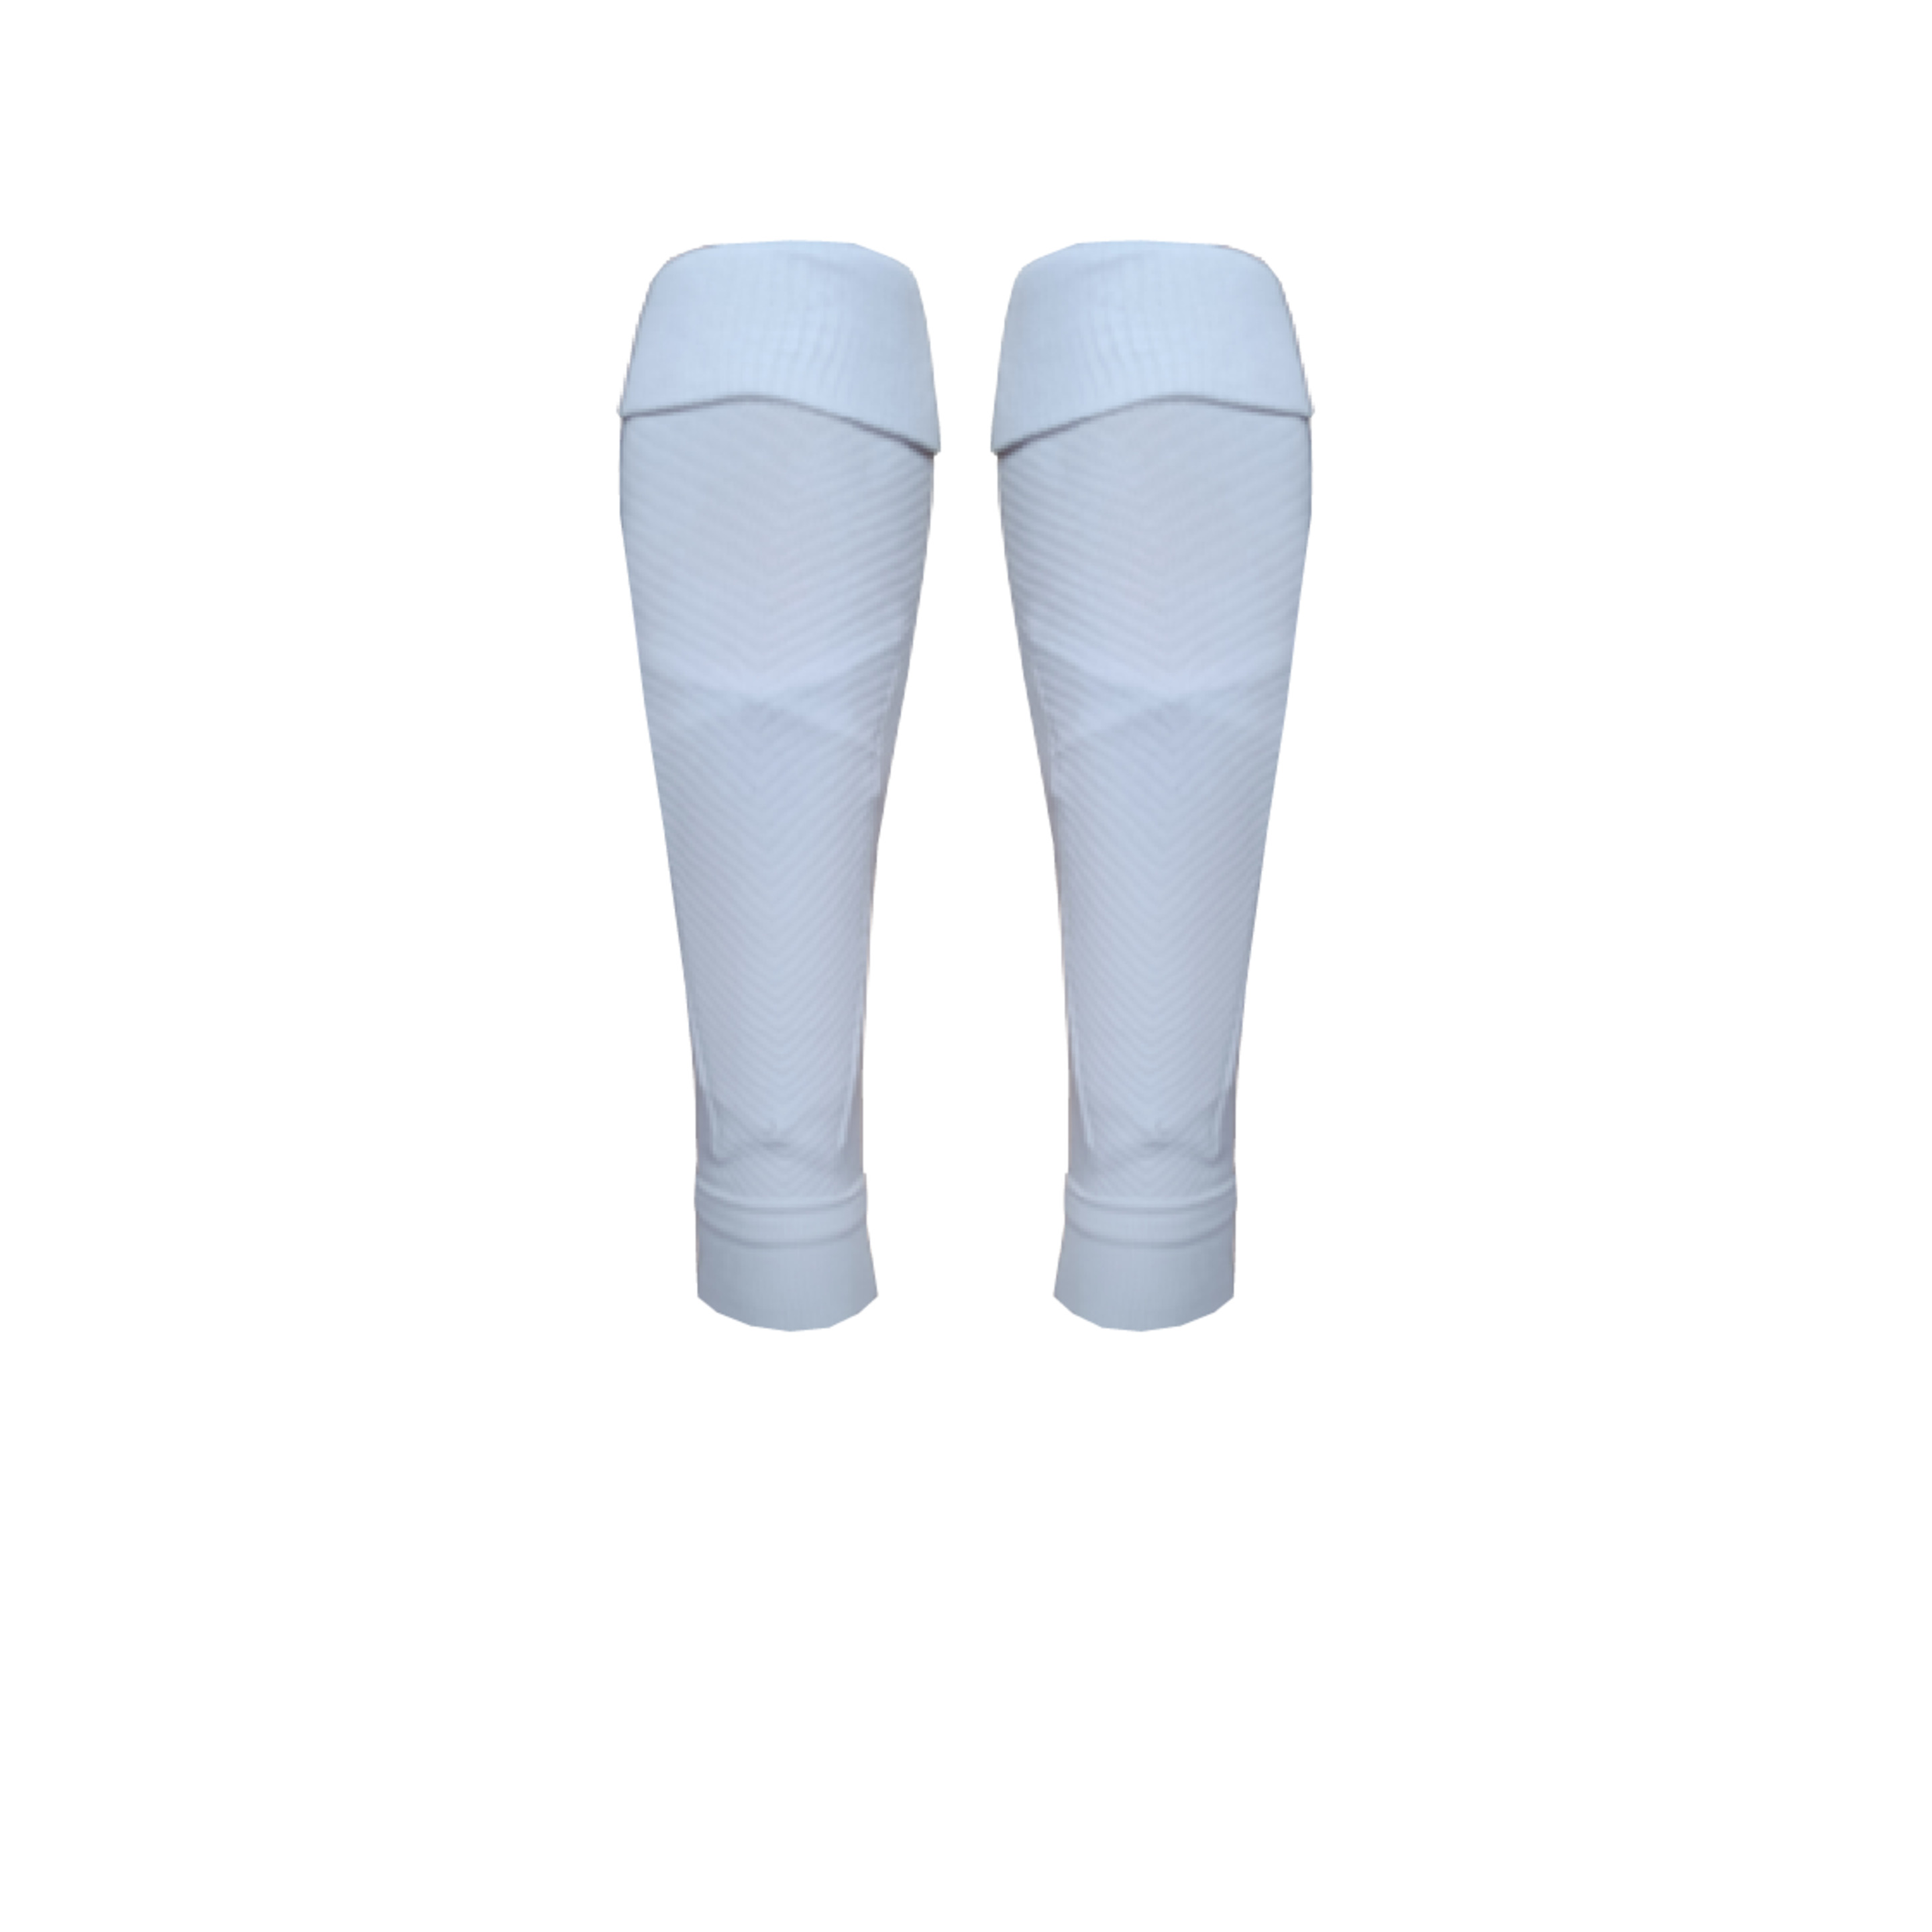 Calcetines Sockapro De Futbol Footless - Blanco - Fijación patentada de espinilleras  MKP